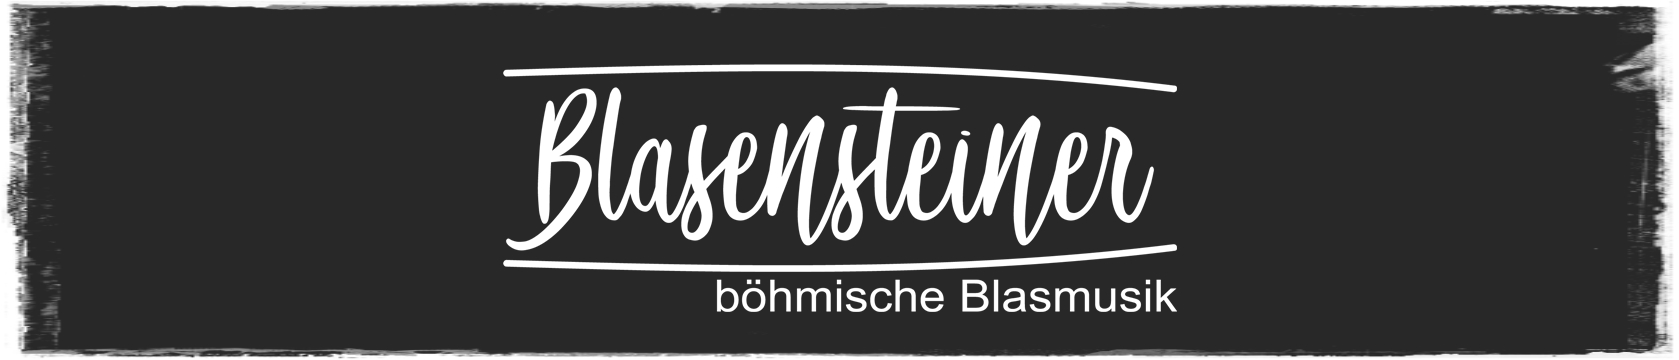 Die Blasensteiner - bhmische Blasmusik